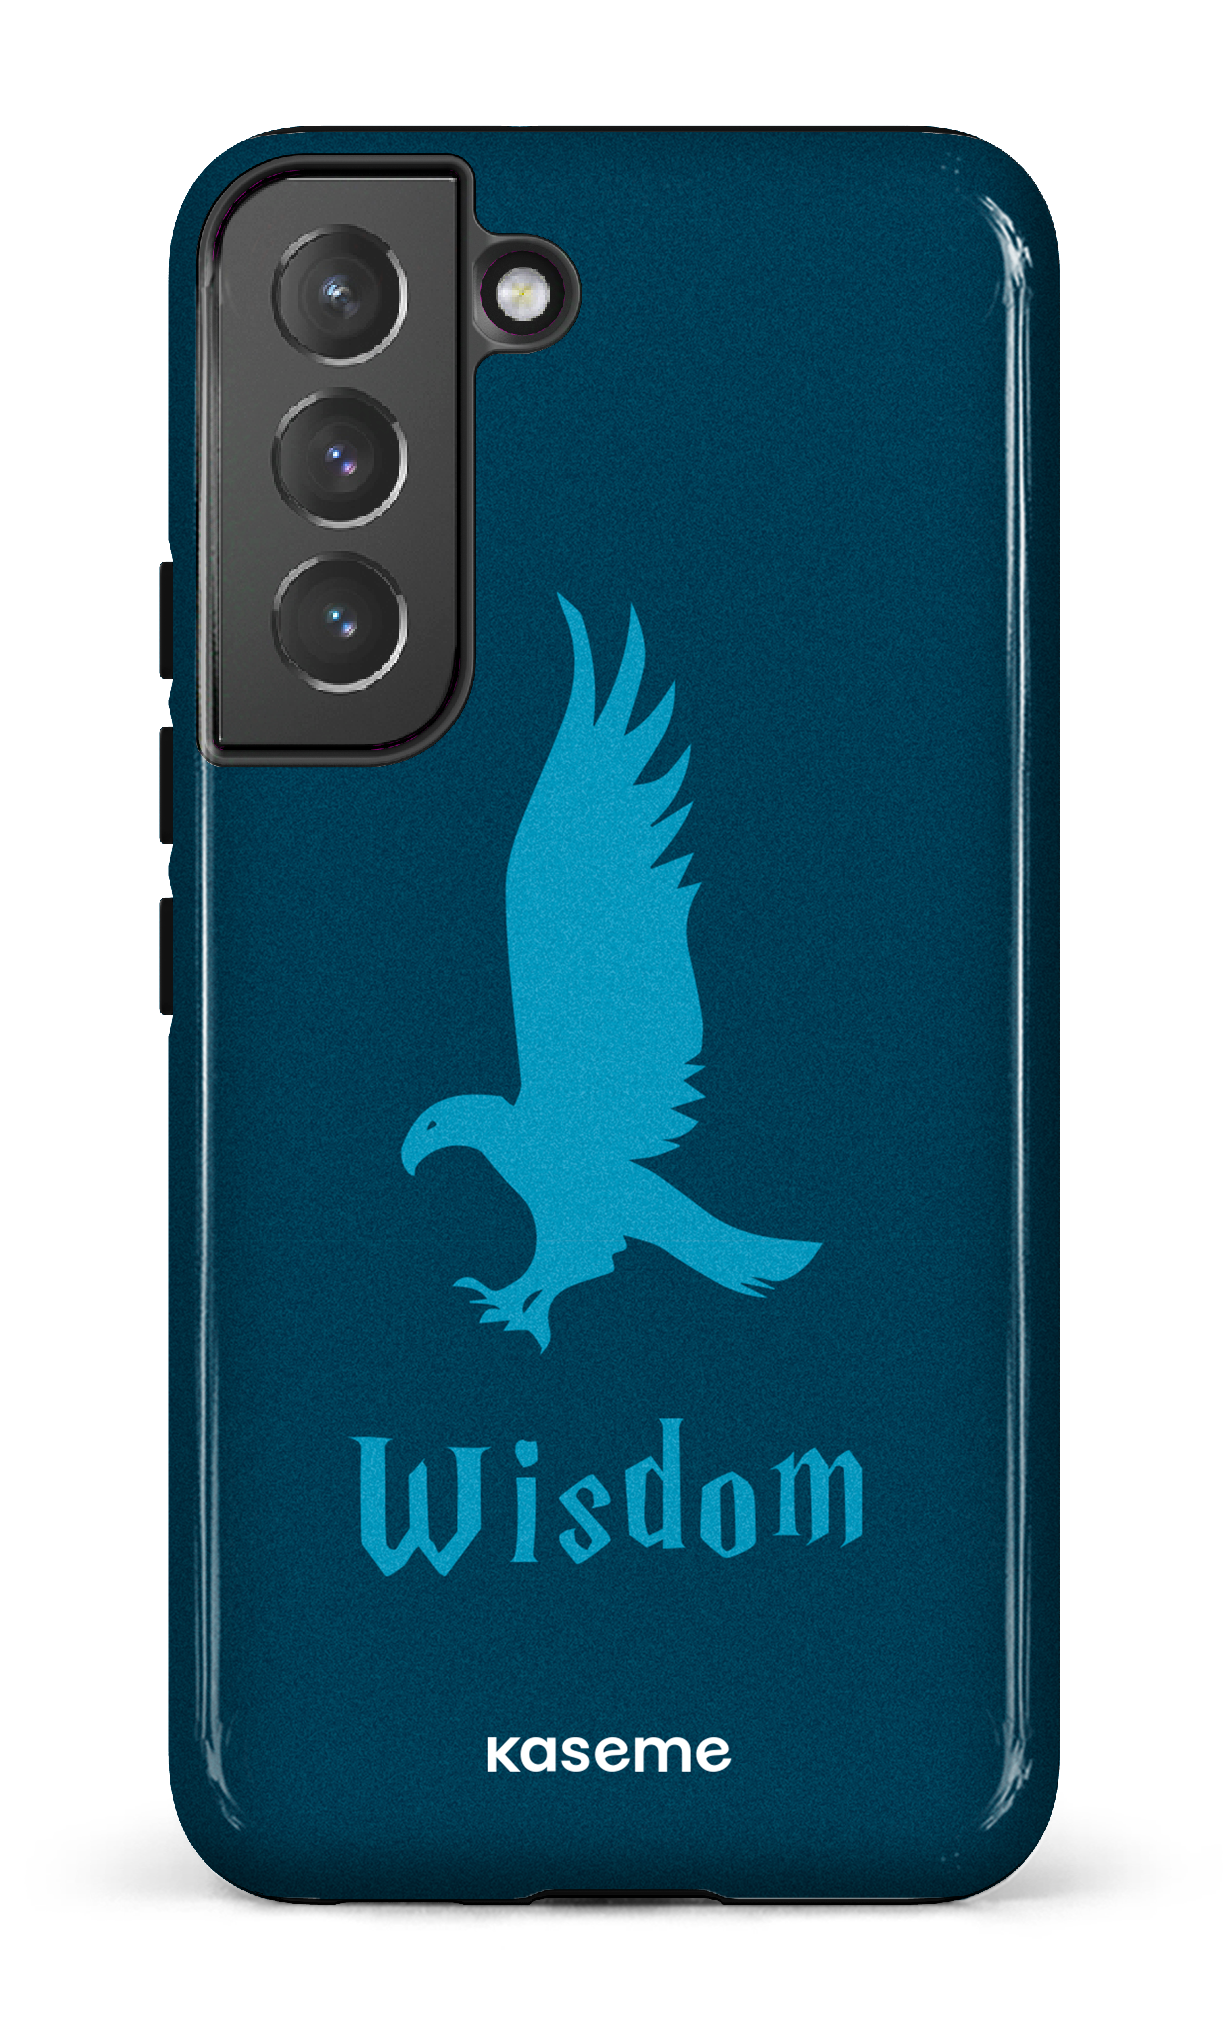 Wisdom - Galaxy S22